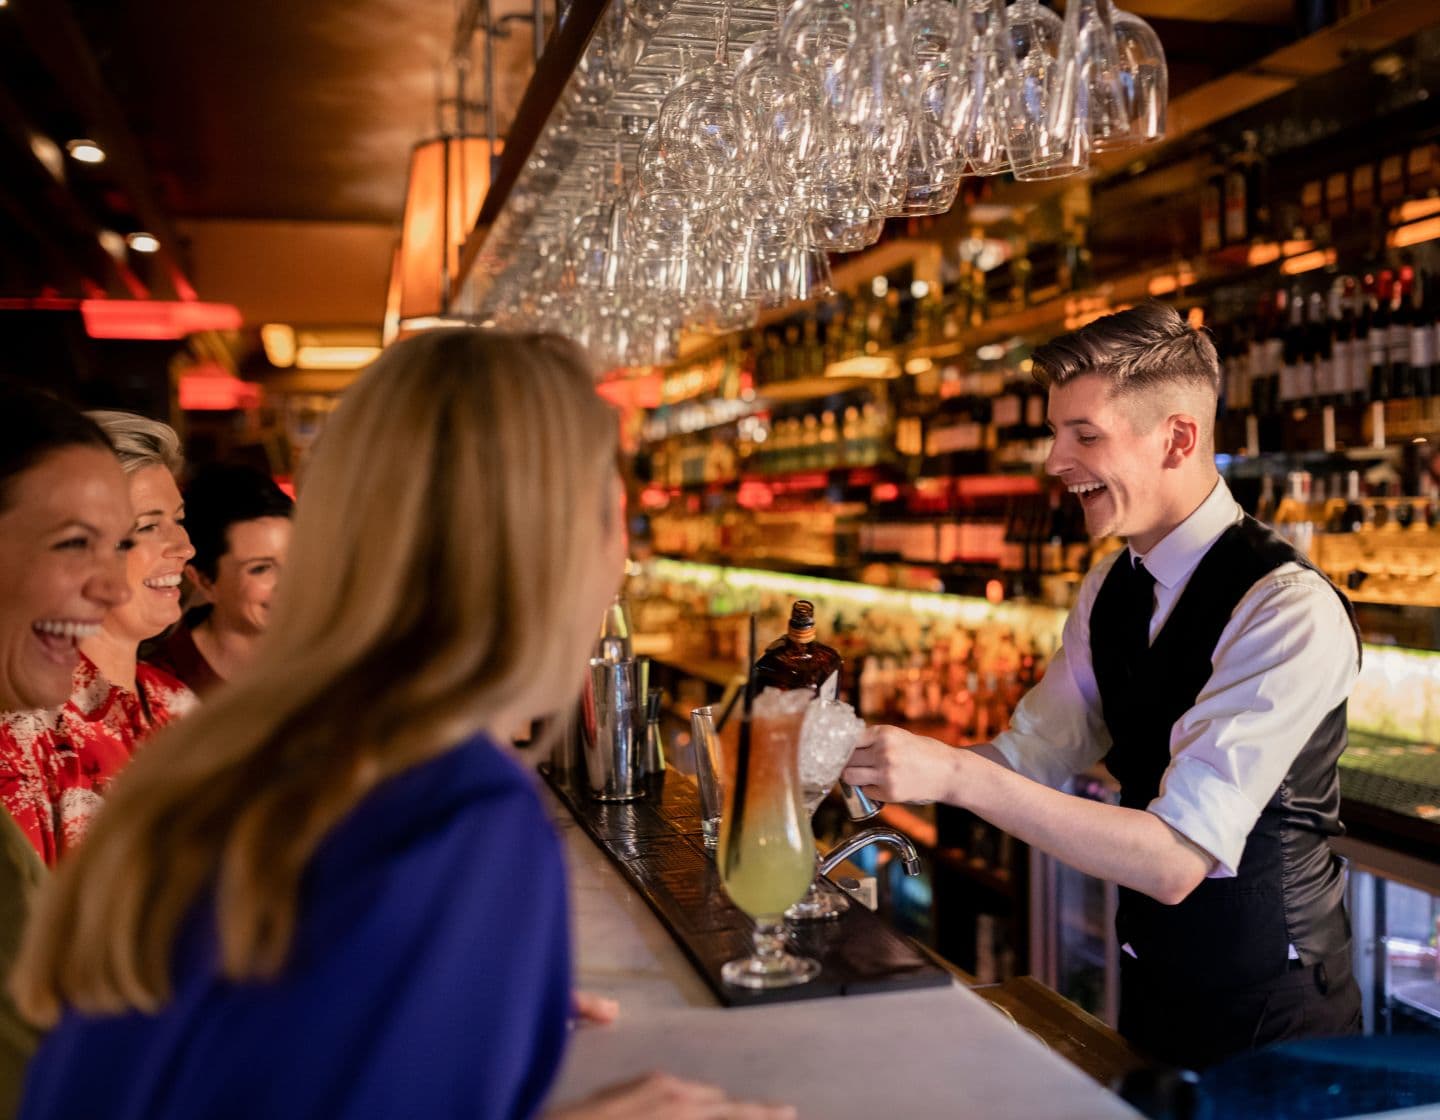  Bartender de pie detrás de la barra preparando un cóctel mientras habla con clientes sonrientes